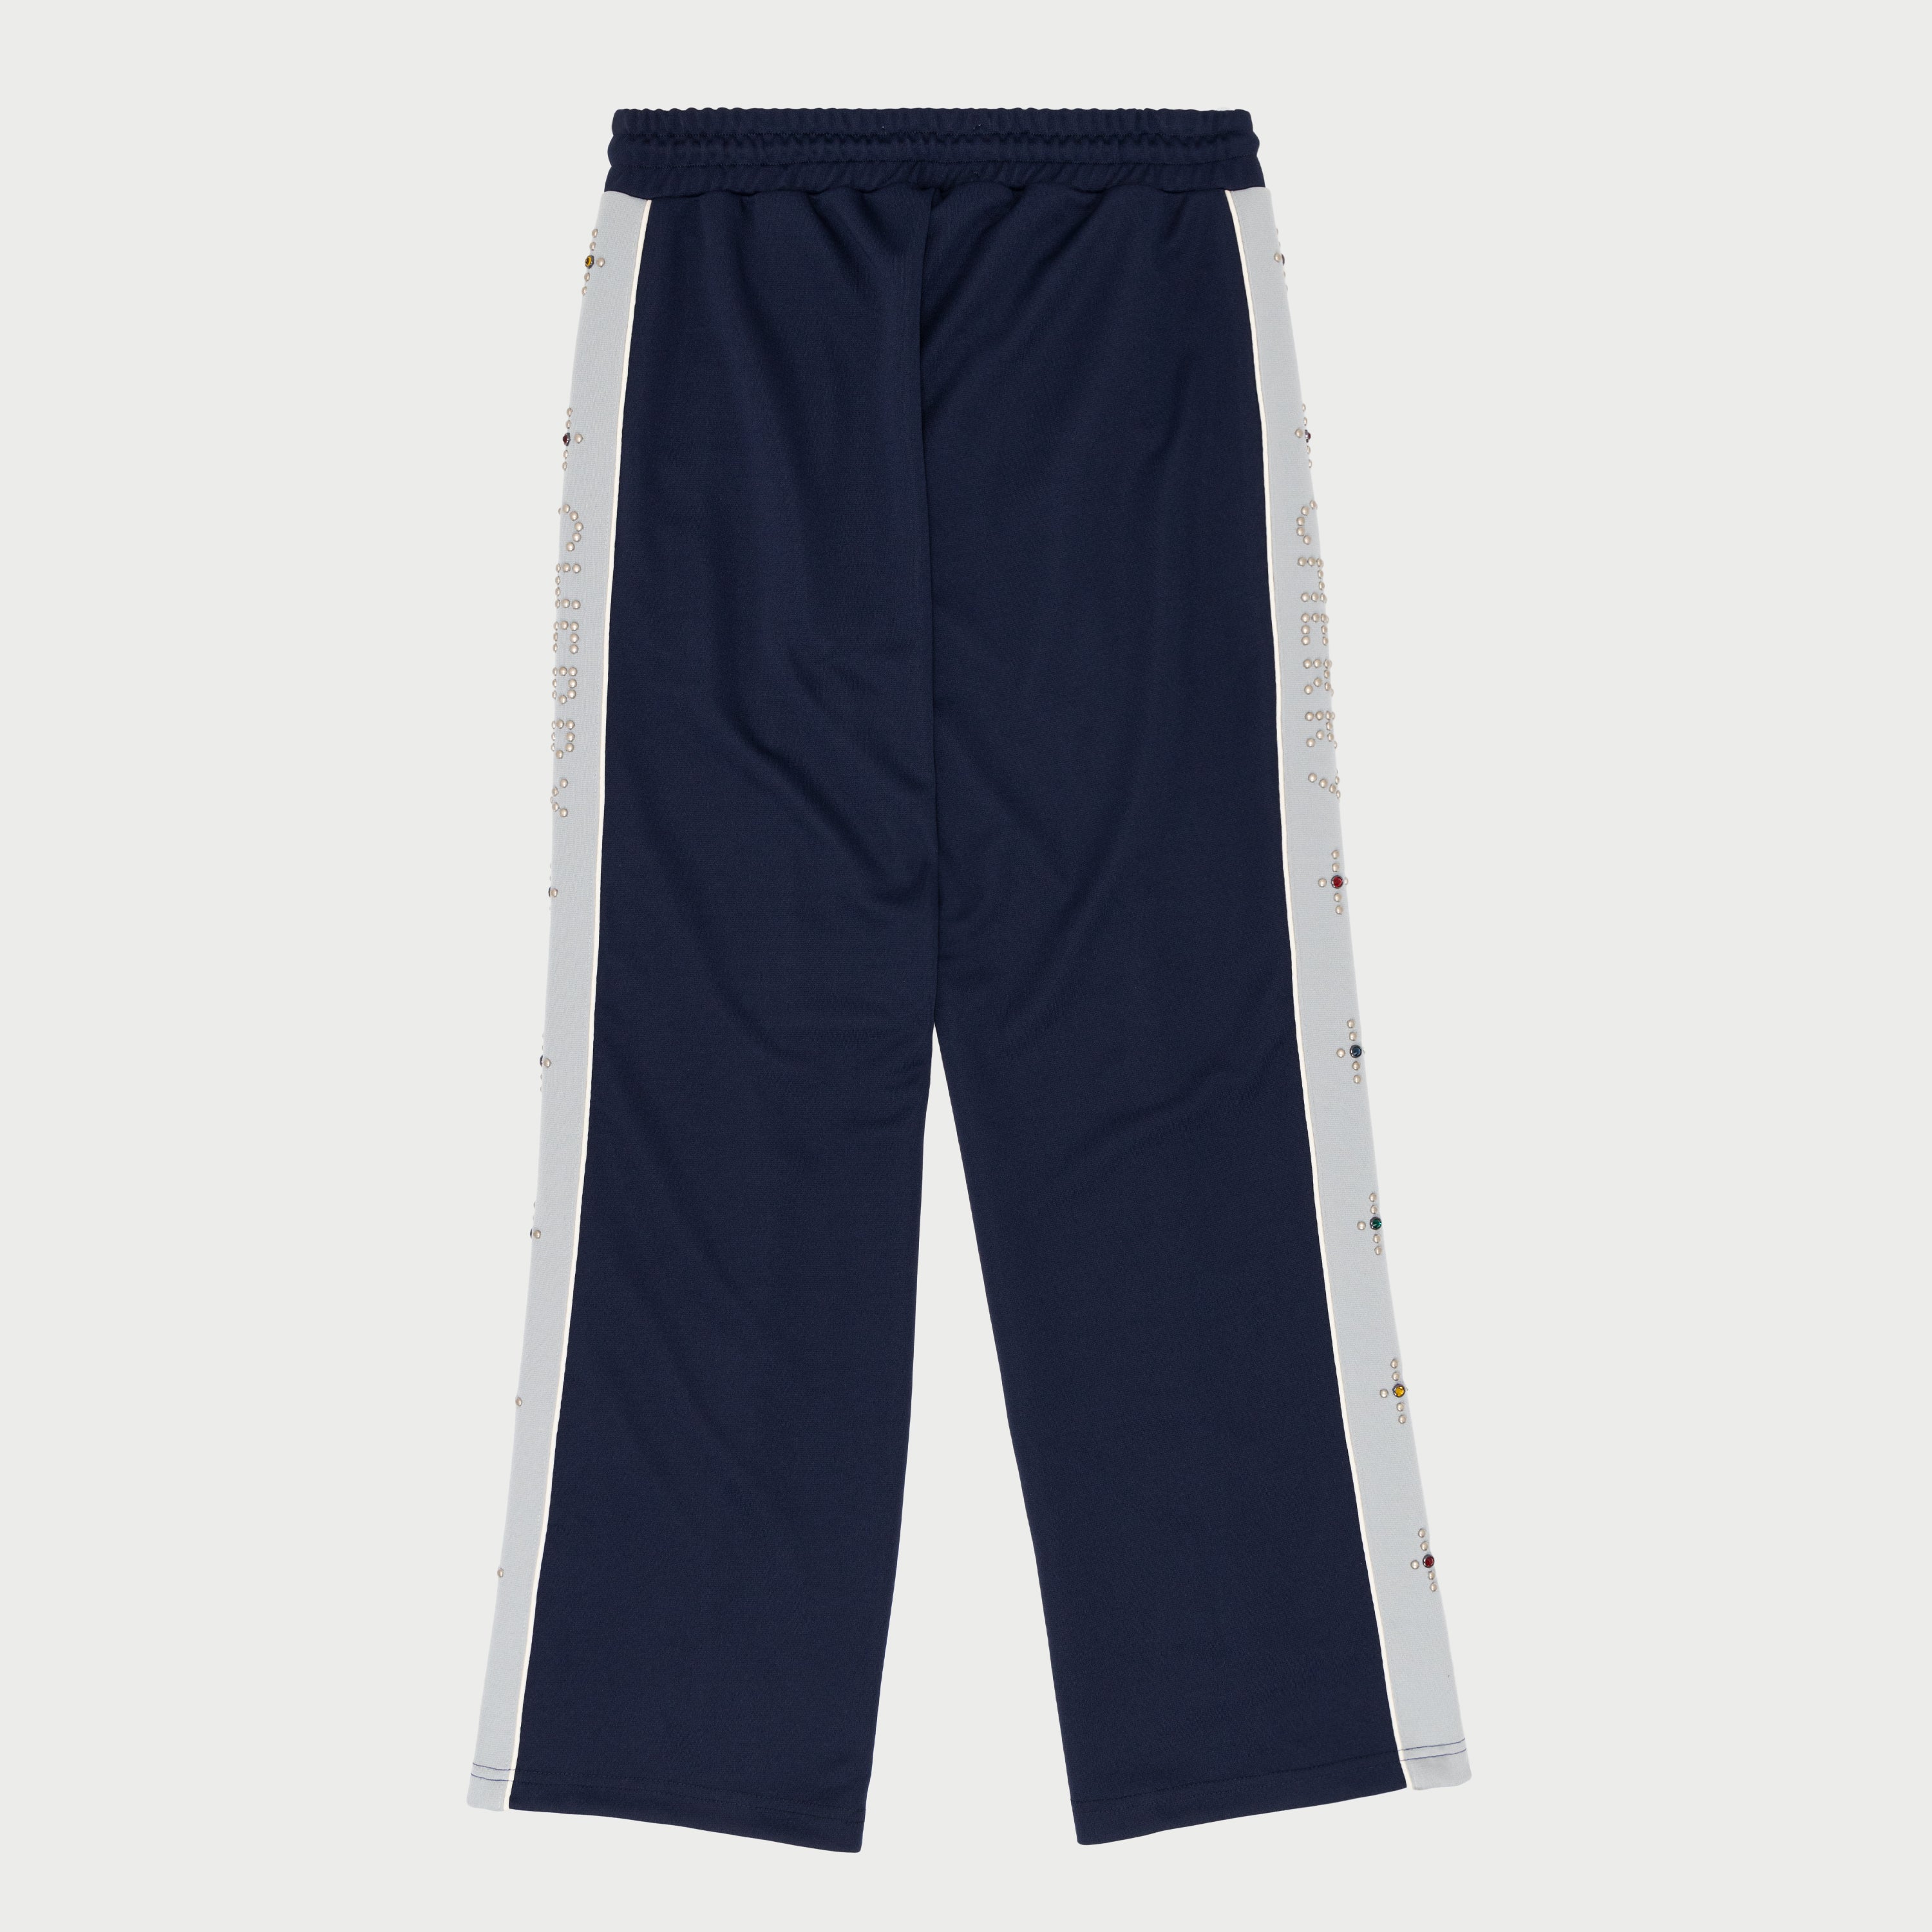 Studded Track Pants (Navy)